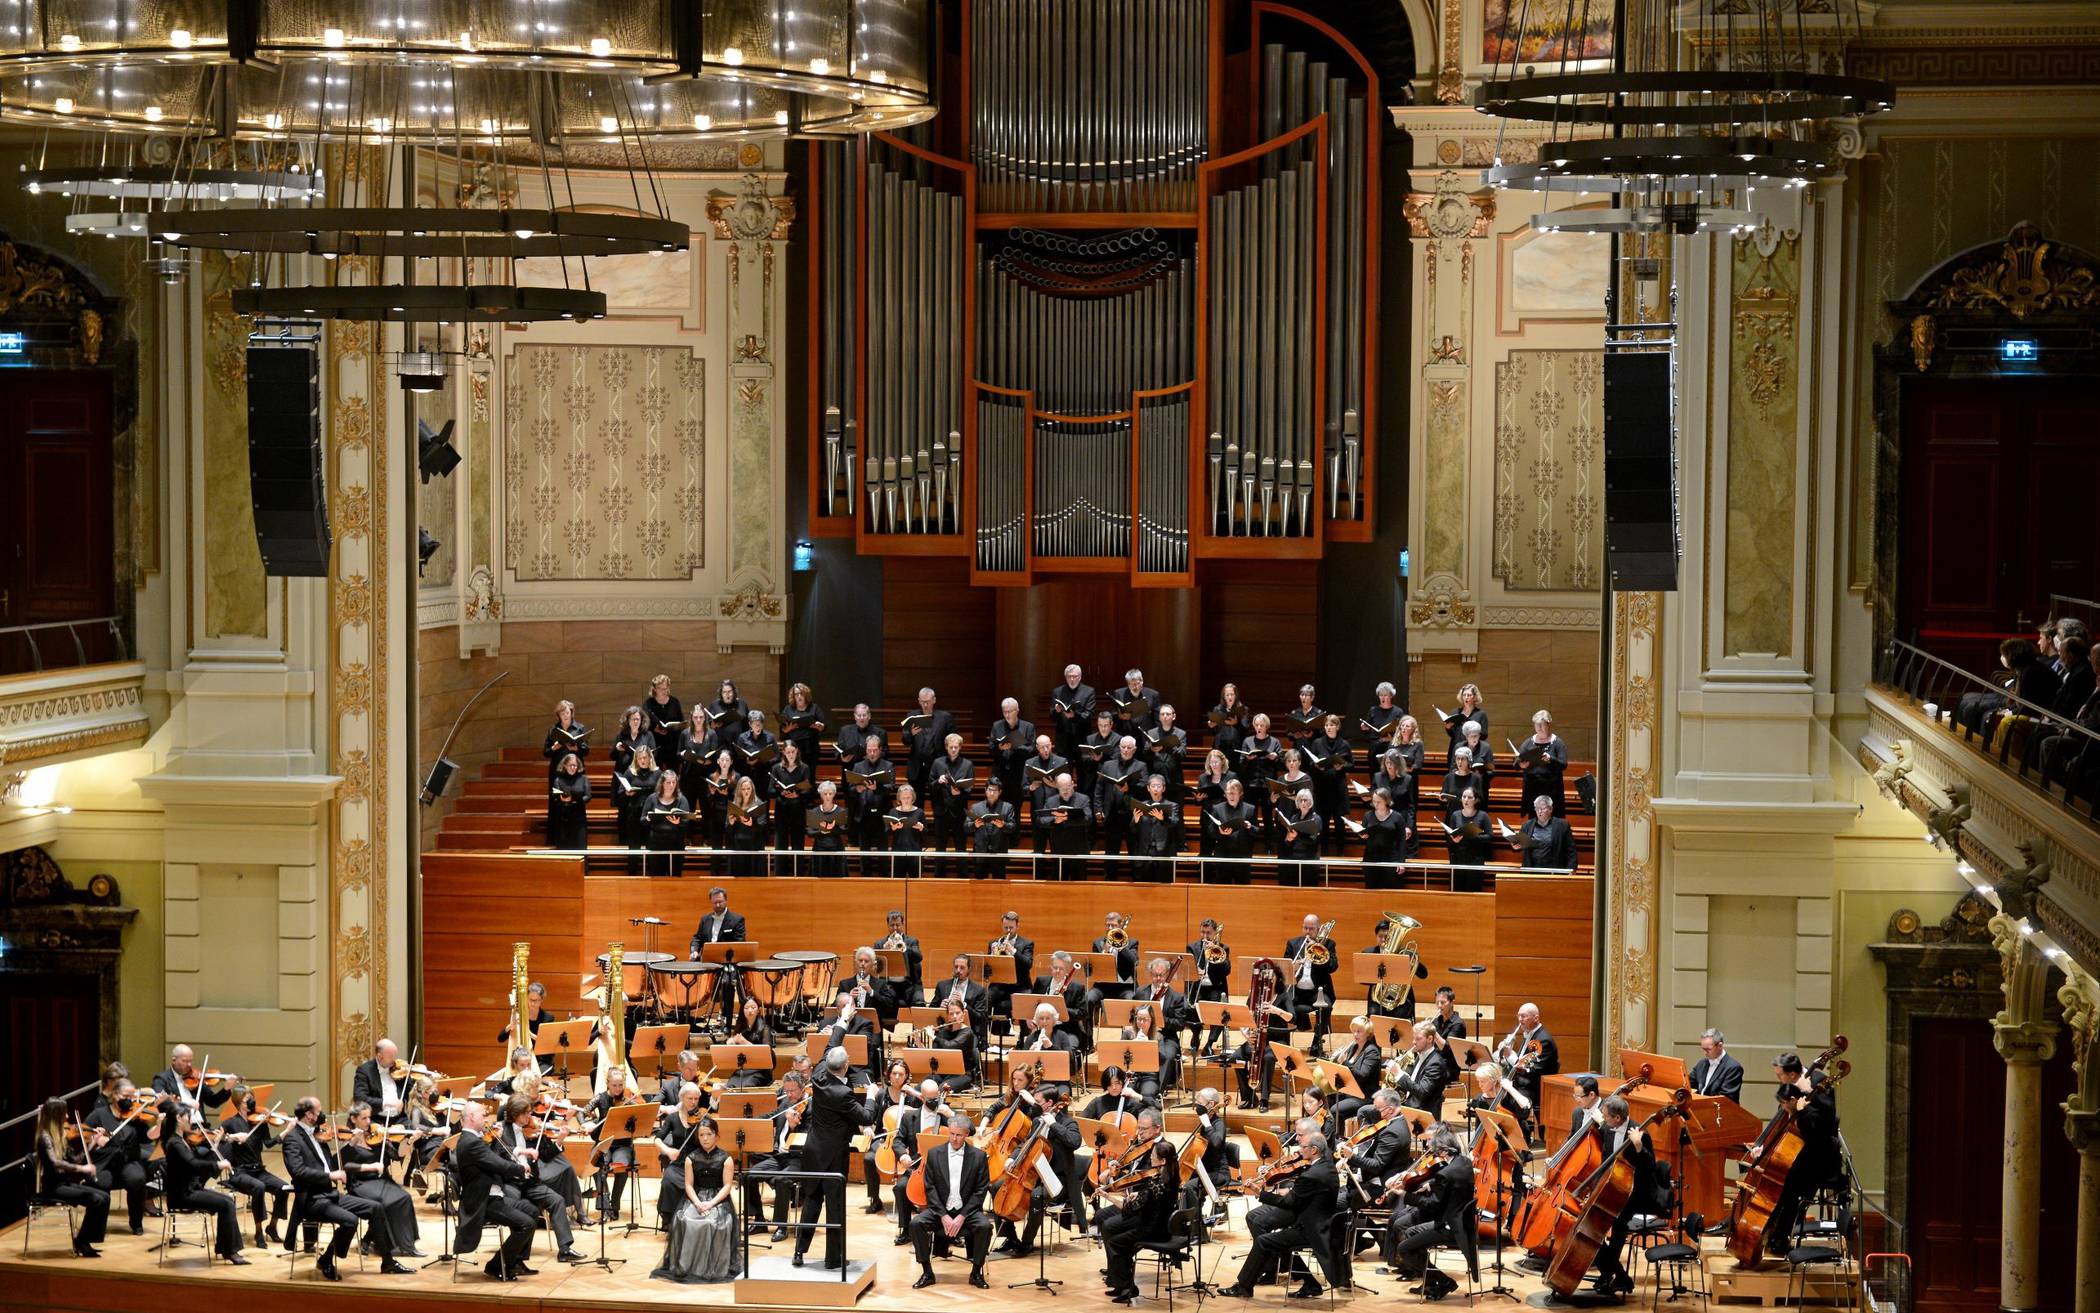  Beim Brahms-Requiem im Großen Saal der Stadthalle konnte der Konzertchor Wuppertal im Oktober 2022 zusammen mit dem Sinfonieorchester sowie den Solisten Ina Yoshikawa und Thomas Laske gut 800 Gäste begeistern.  